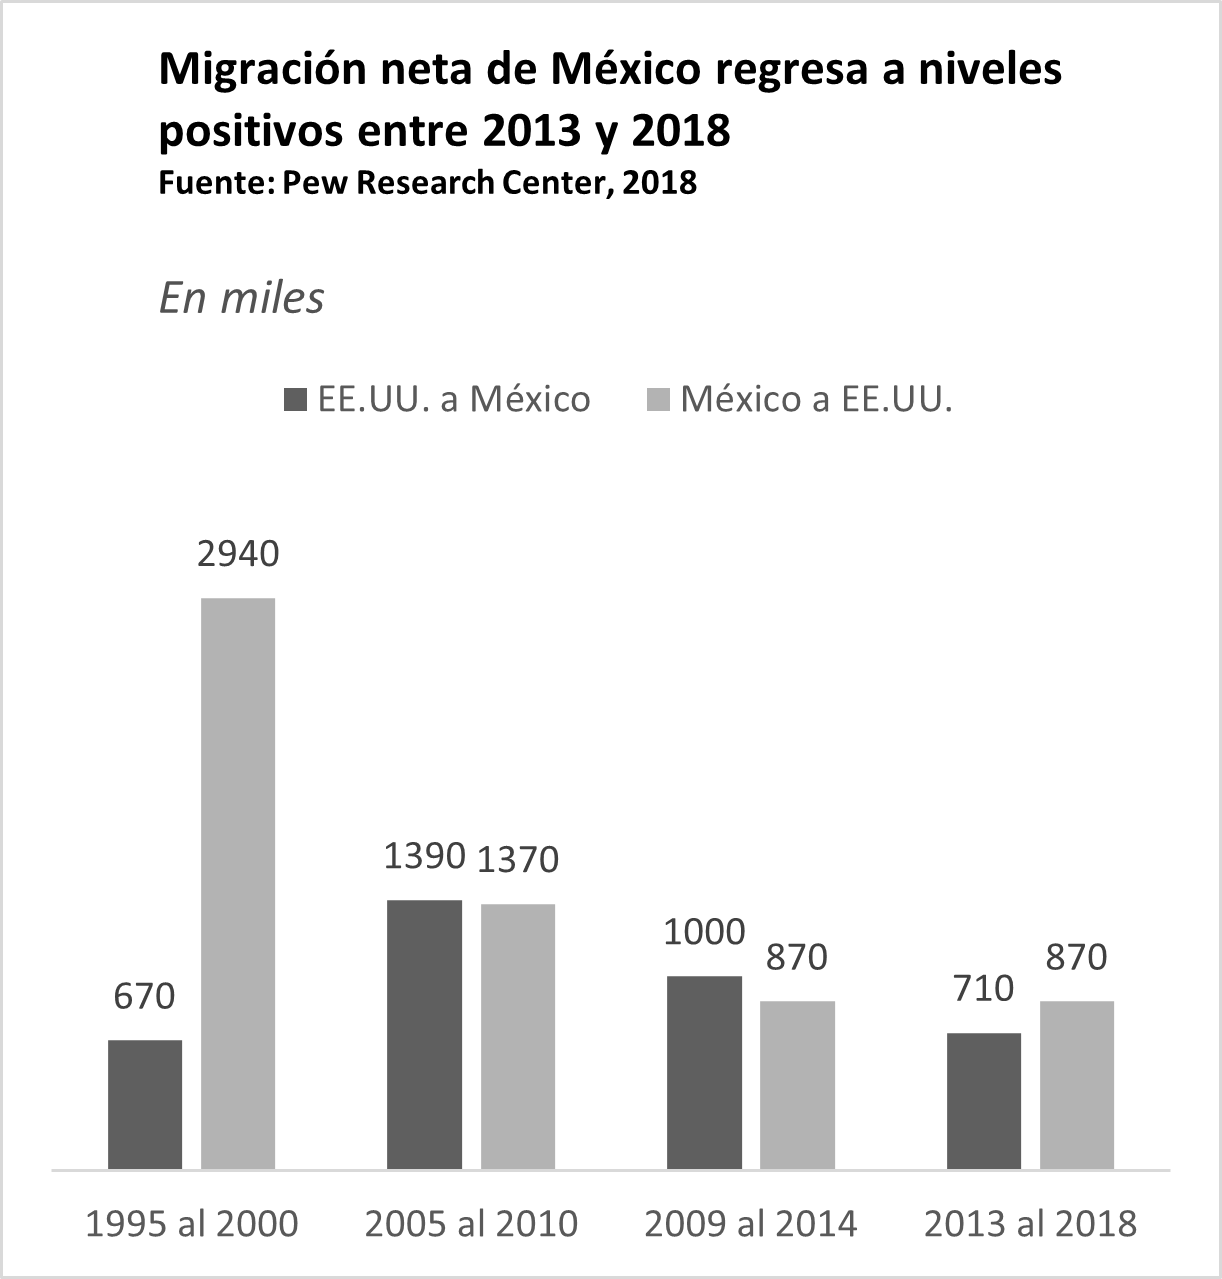 Migración neta de México a Estados Unidos regresa a niveles positivos entre 2013 y 2018